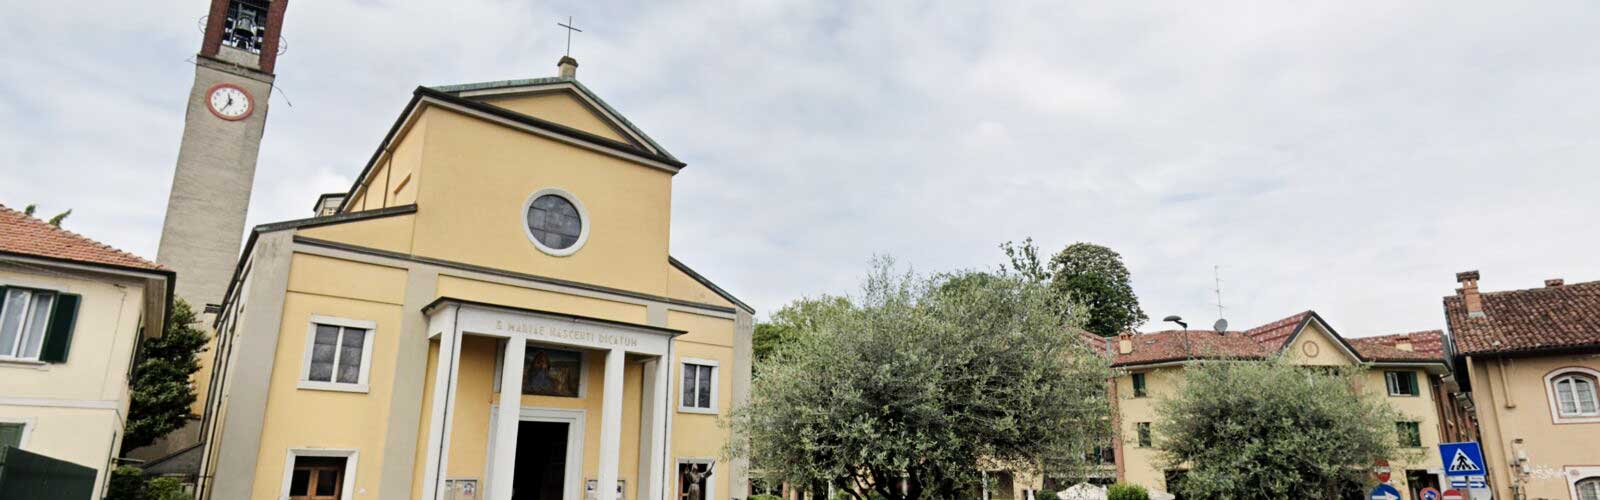 Chiesa di Santa Maria Nascente, Paderno Dugnano (MI)